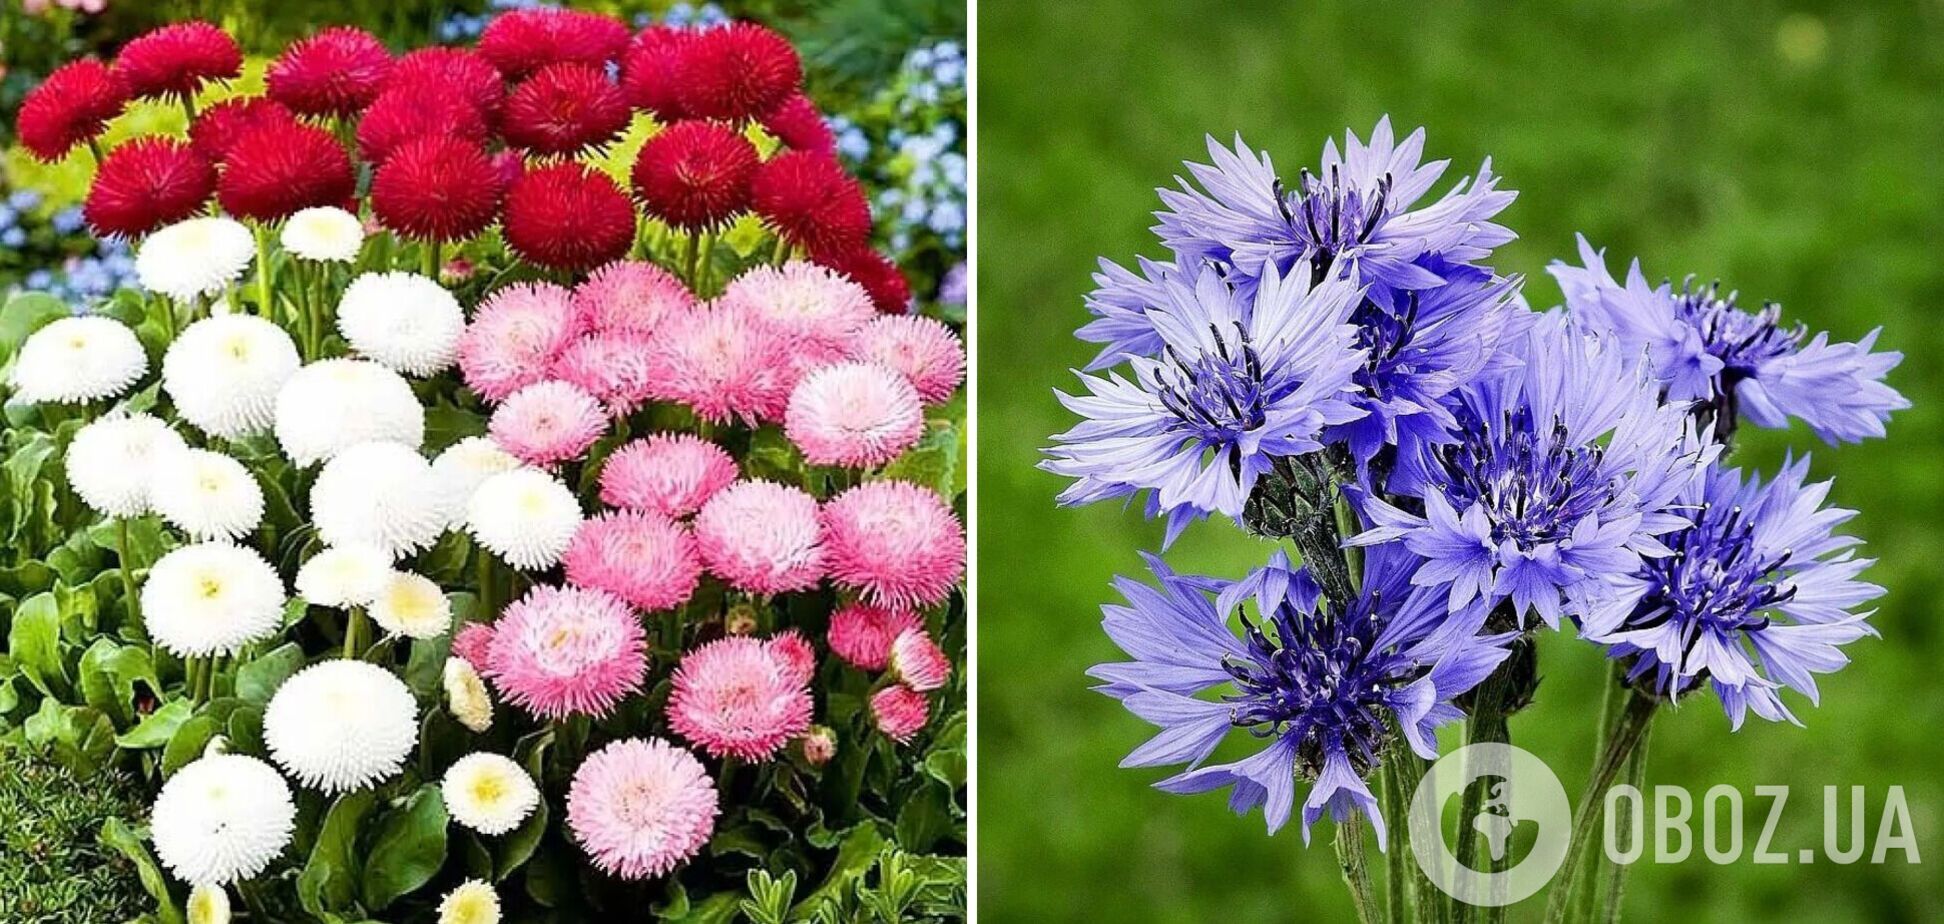 Як будуть українською маргаритки і васильки: правильні назви квітів